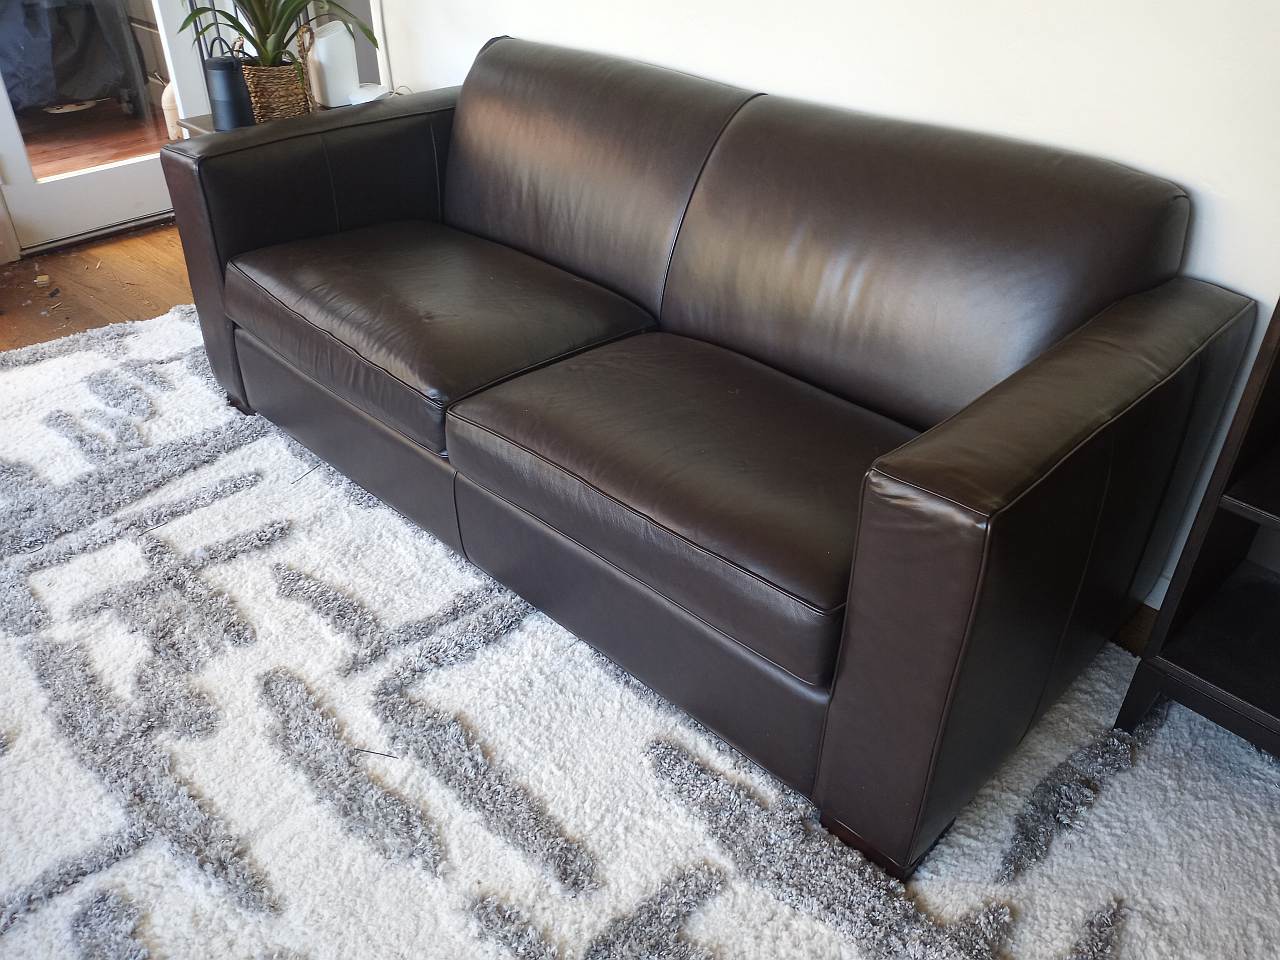 Leather Sofa Repair San Francisco